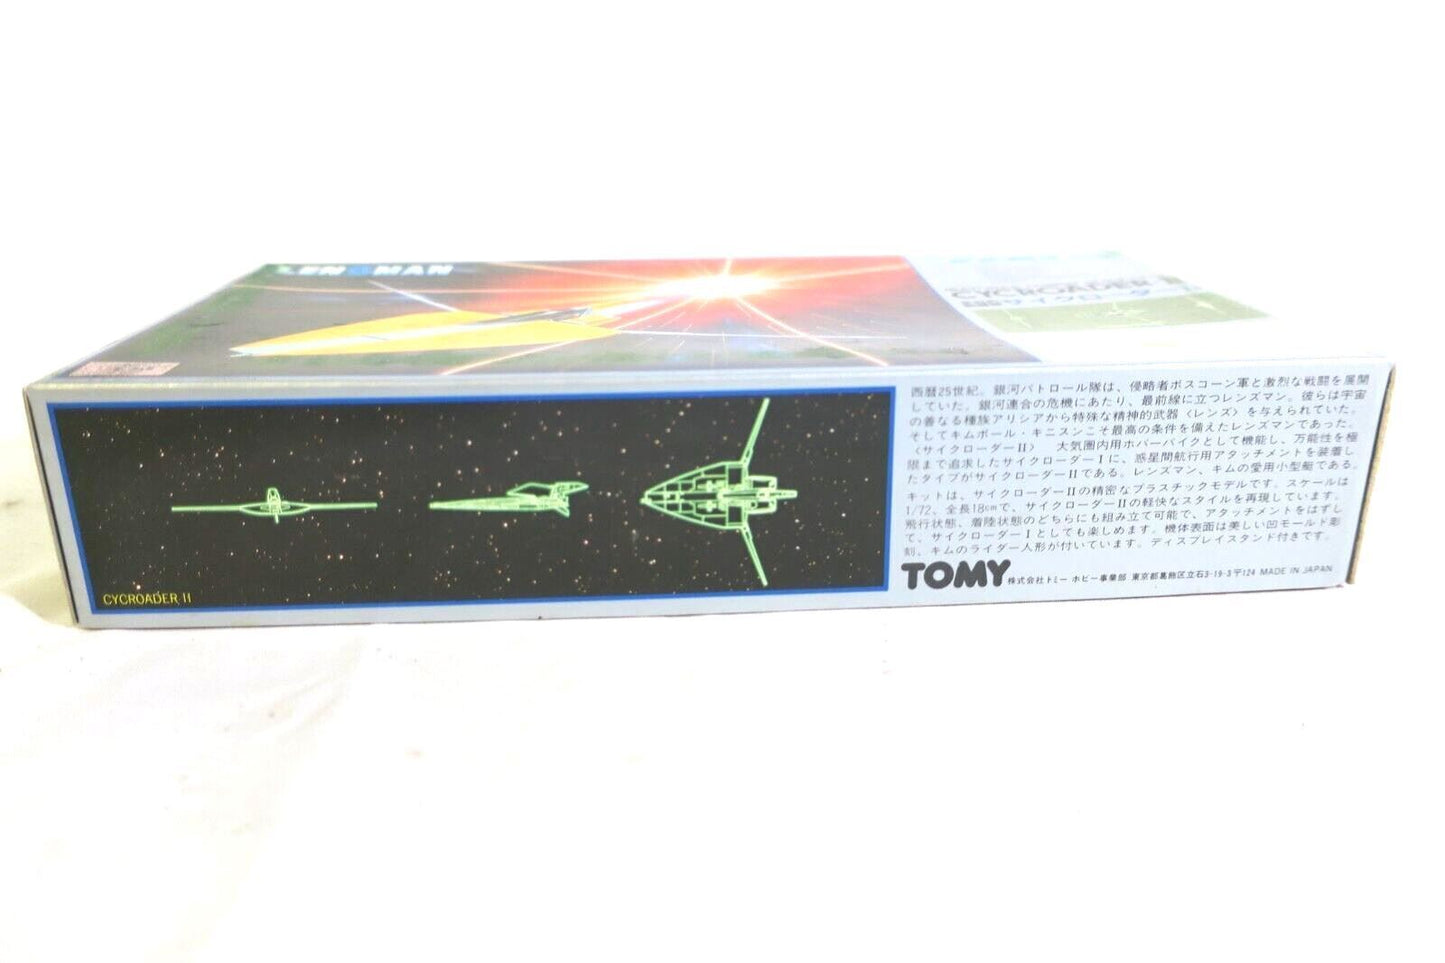 Lensman Cycroader II Tomy Space Vintage Model Kit (F8)